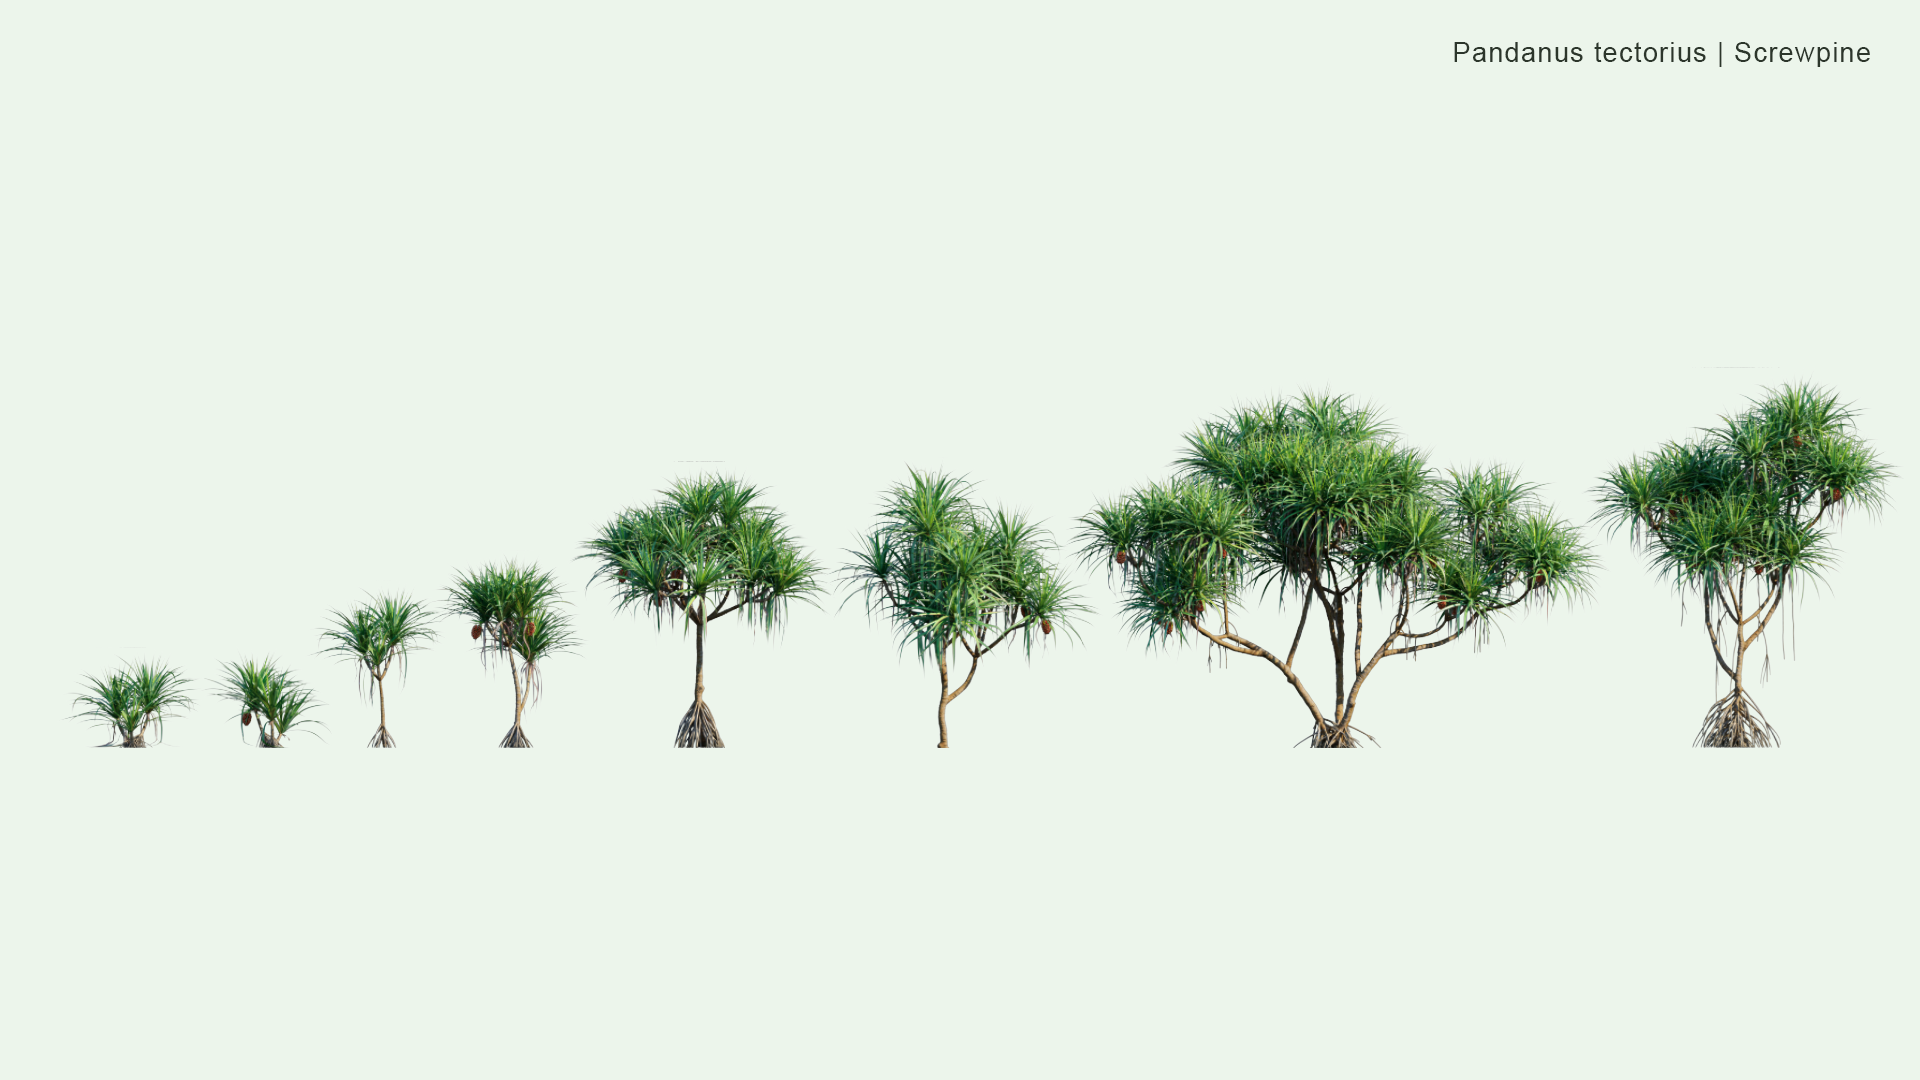 2D Pandanus Tectorius - Screwpine, Hala Tree